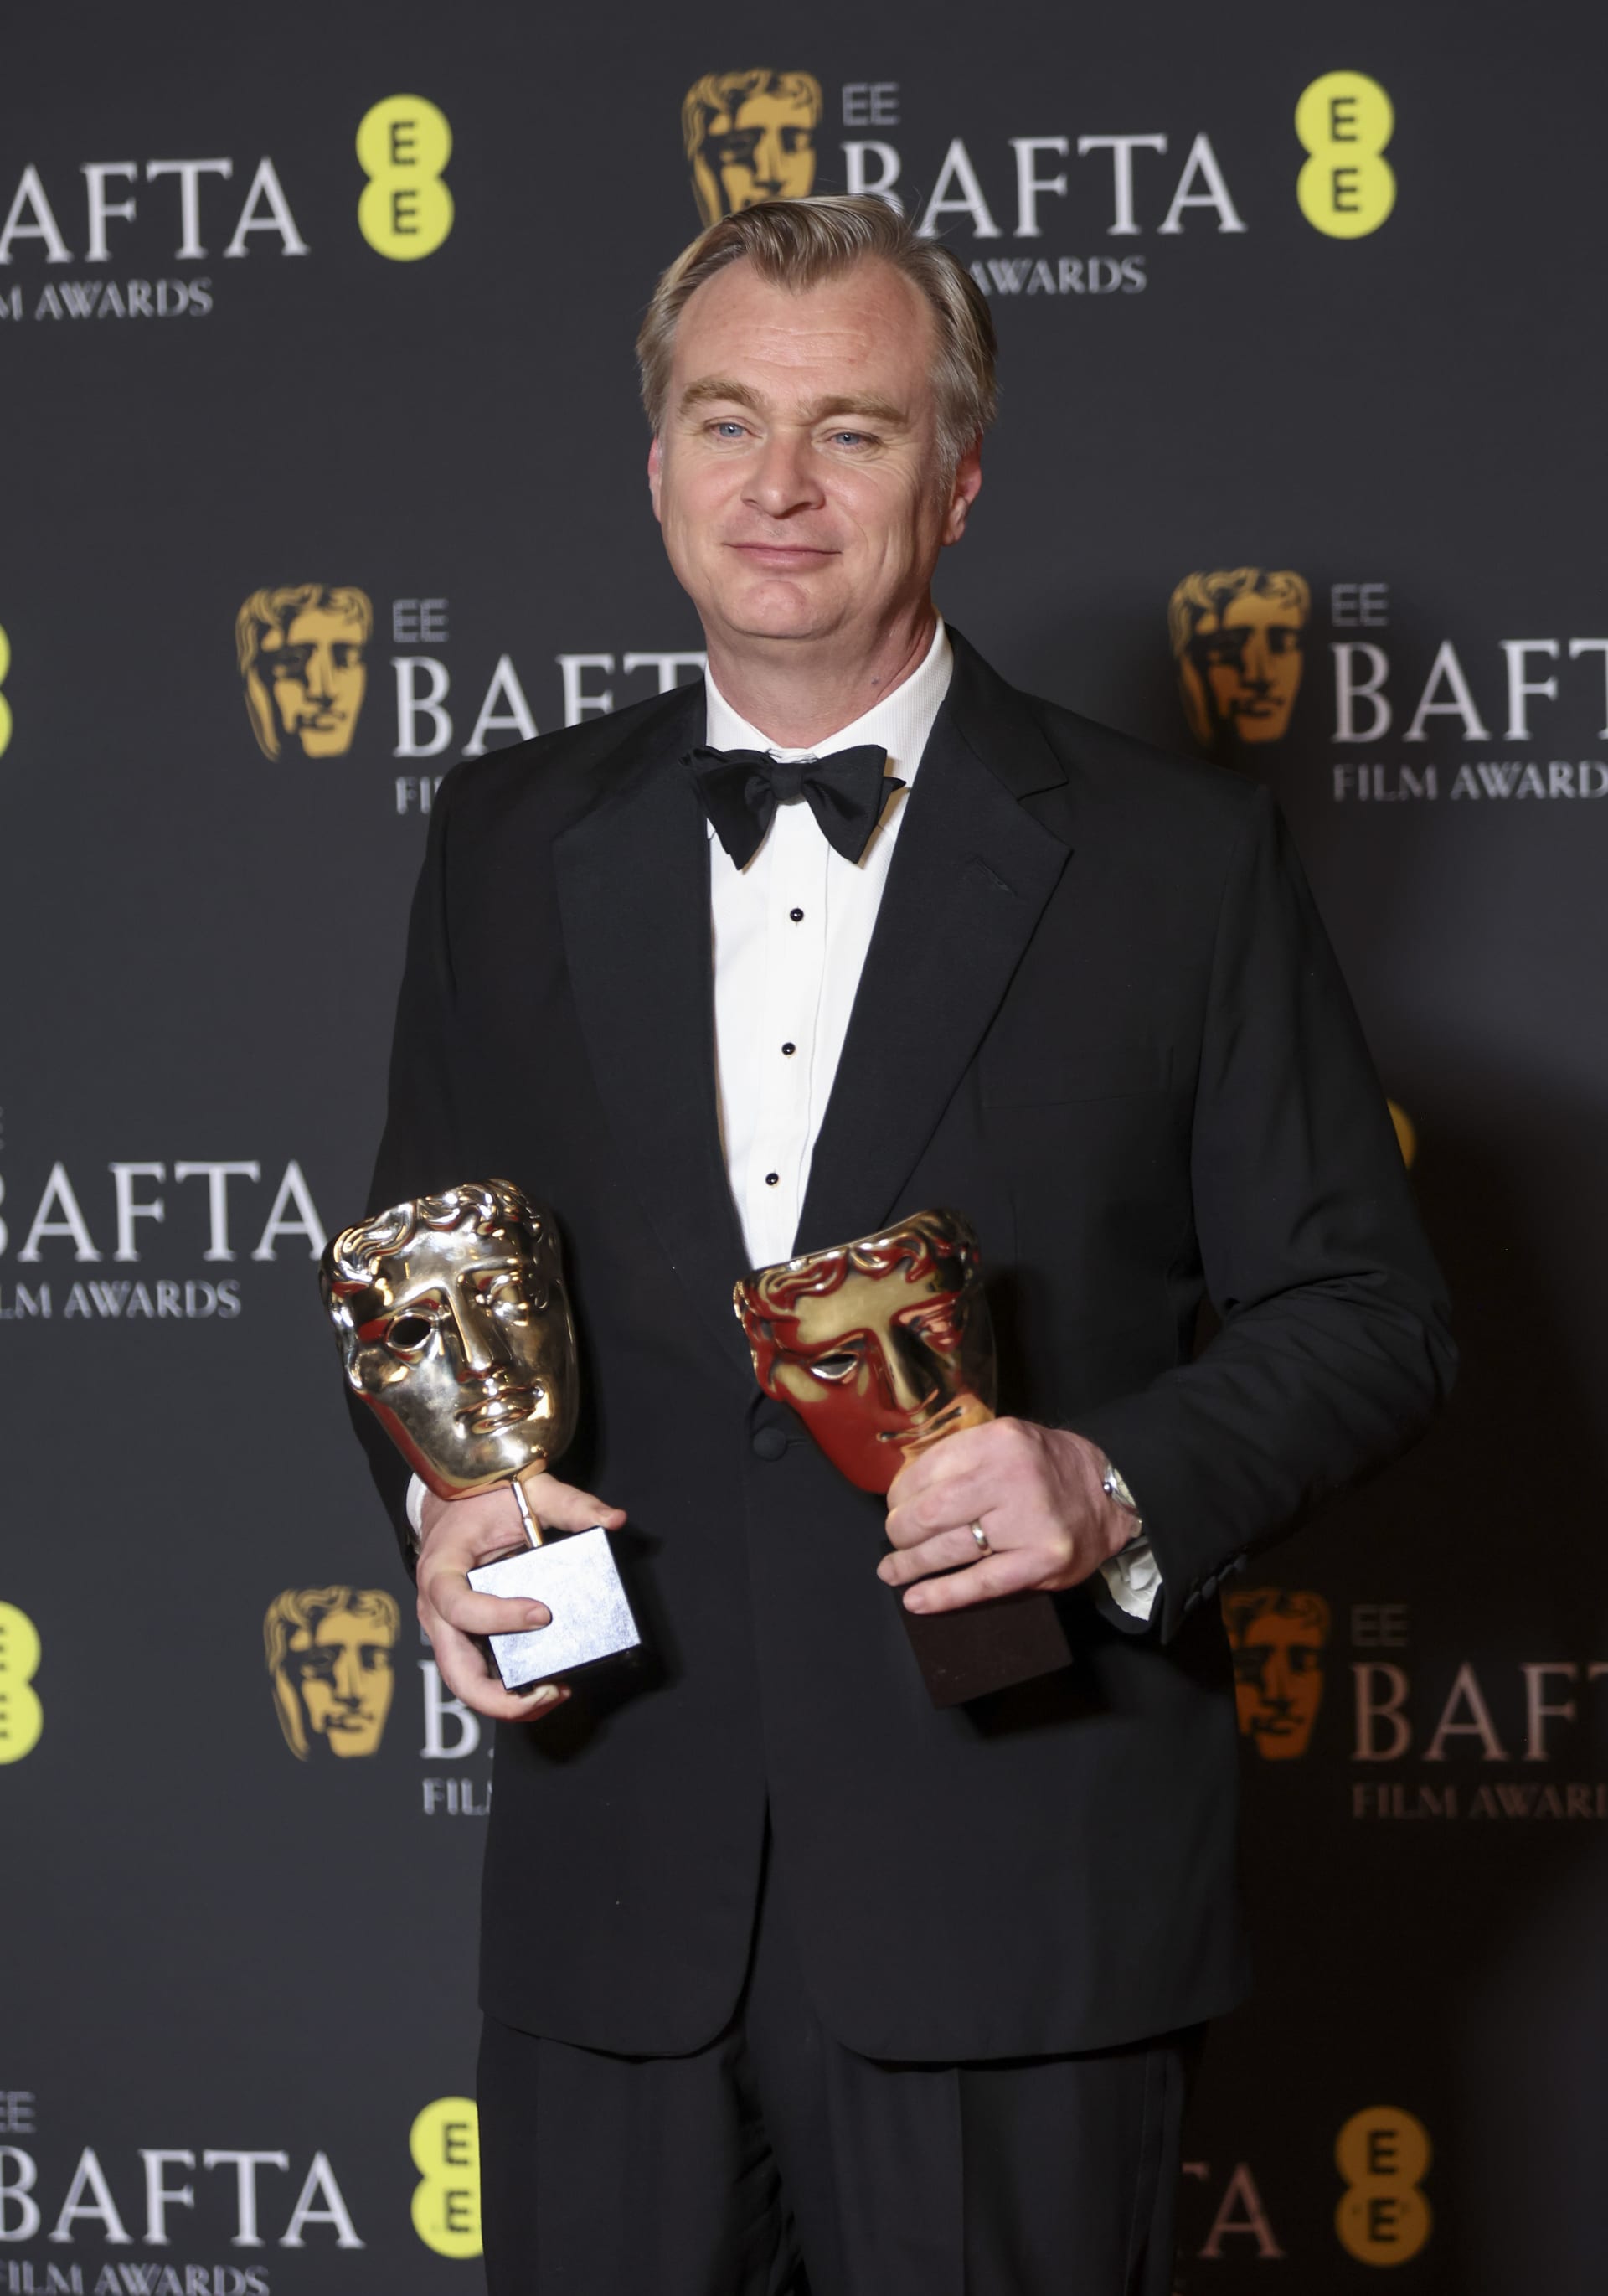 Režisér Christopher Nolan režíroval snímek Oppenheimer.